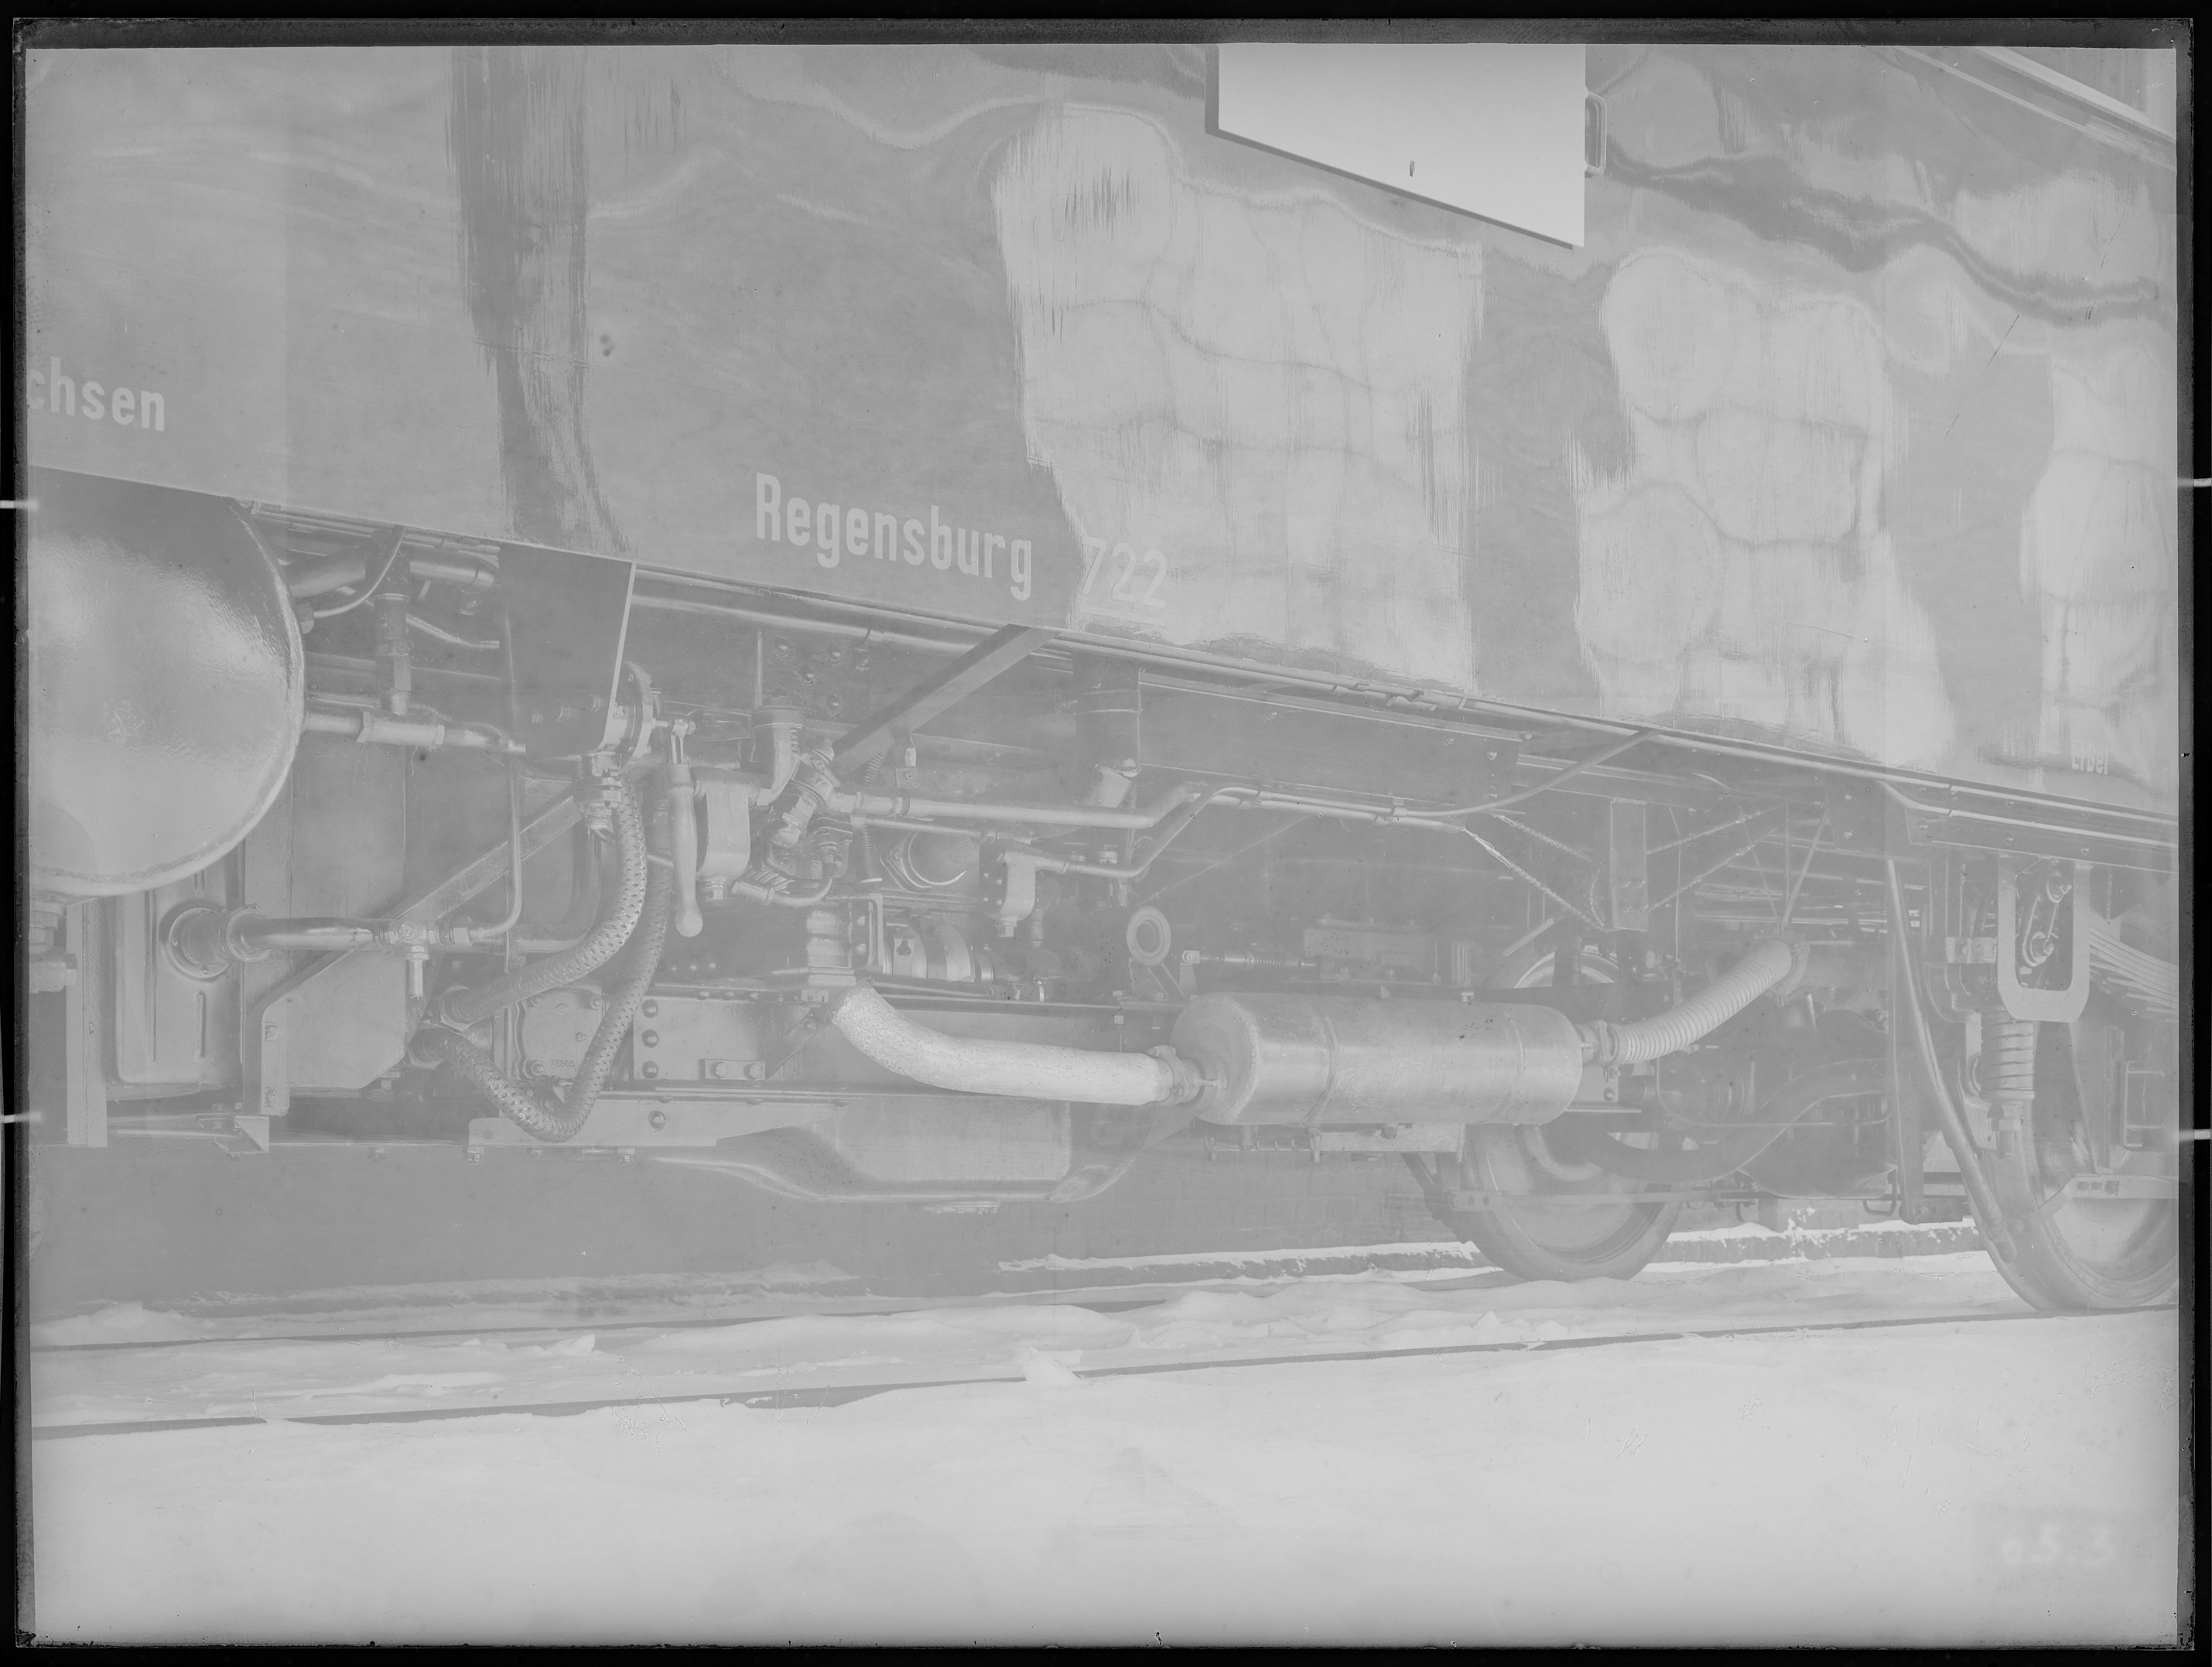 Fotografie: zweiachsiger Triebwagen mit Verbrennungsmotor (Schrägansicht, Spurweite: 1435 mm), Wagenkasten in geschweißter Stahlleichtbauweise auf Dre (Verkehrsmuseum Dresden CC BY-NC-SA)